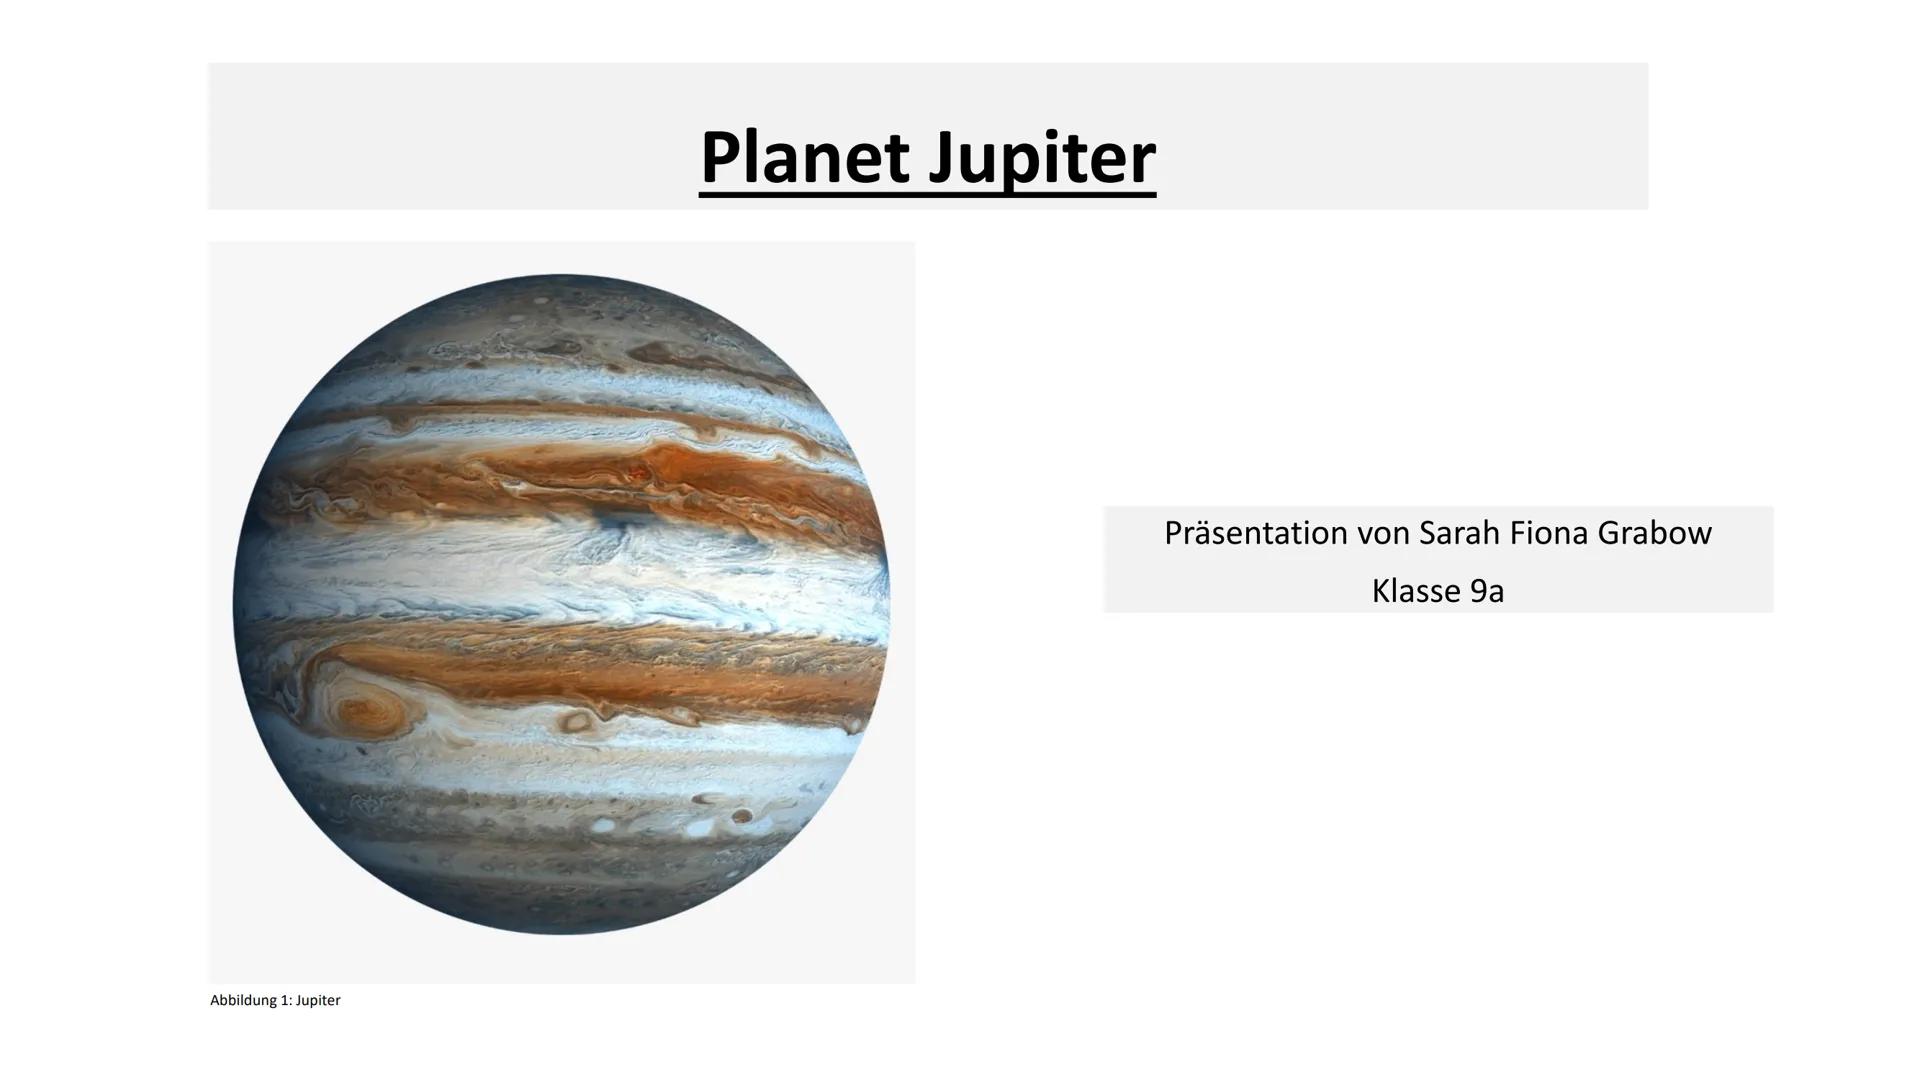 Abbildung 1: Jupiter
Planet Jupiter
Präsentation von Sarah Fiona Grabow
Klasse 9a Gliederung
●
Folie 1: Deckblatt
Folie 2: Gliederung
Folie 